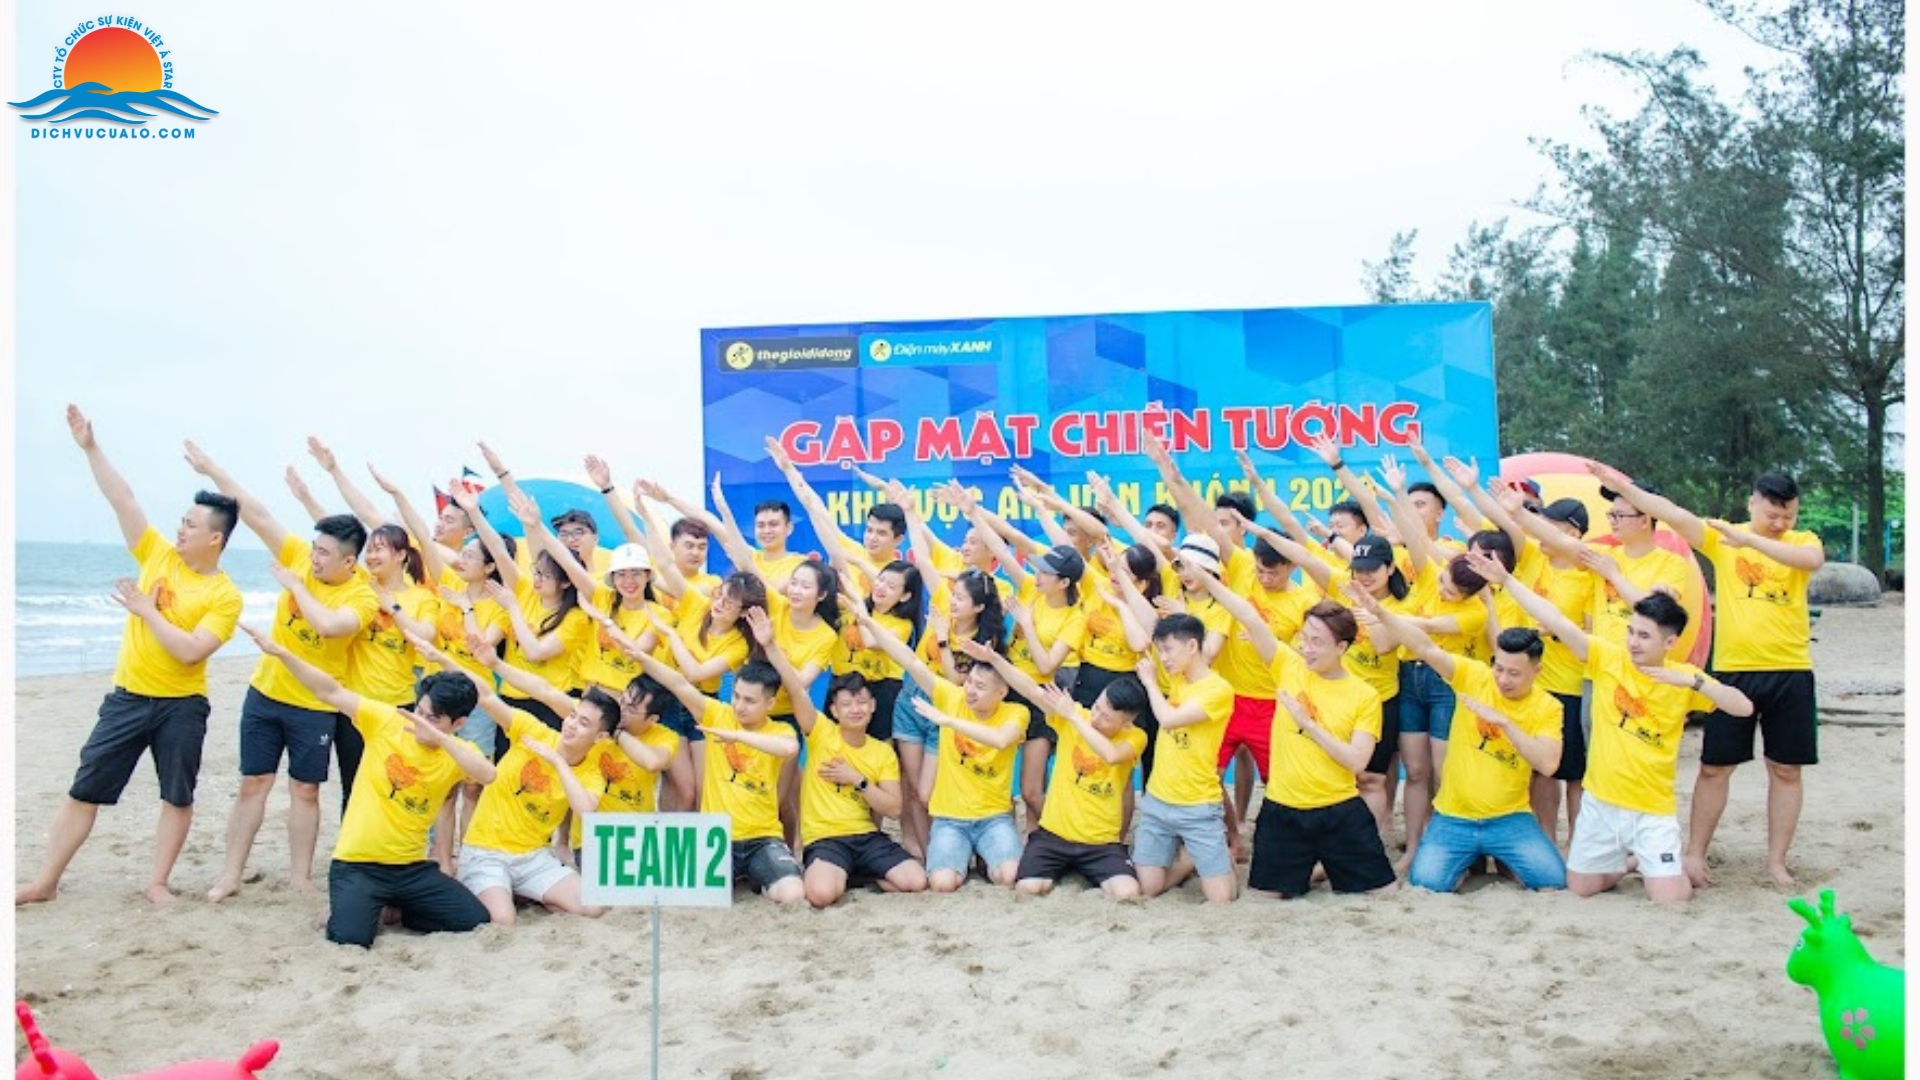 Tổ chức sự kiện teambuilding biển Cửa Lò